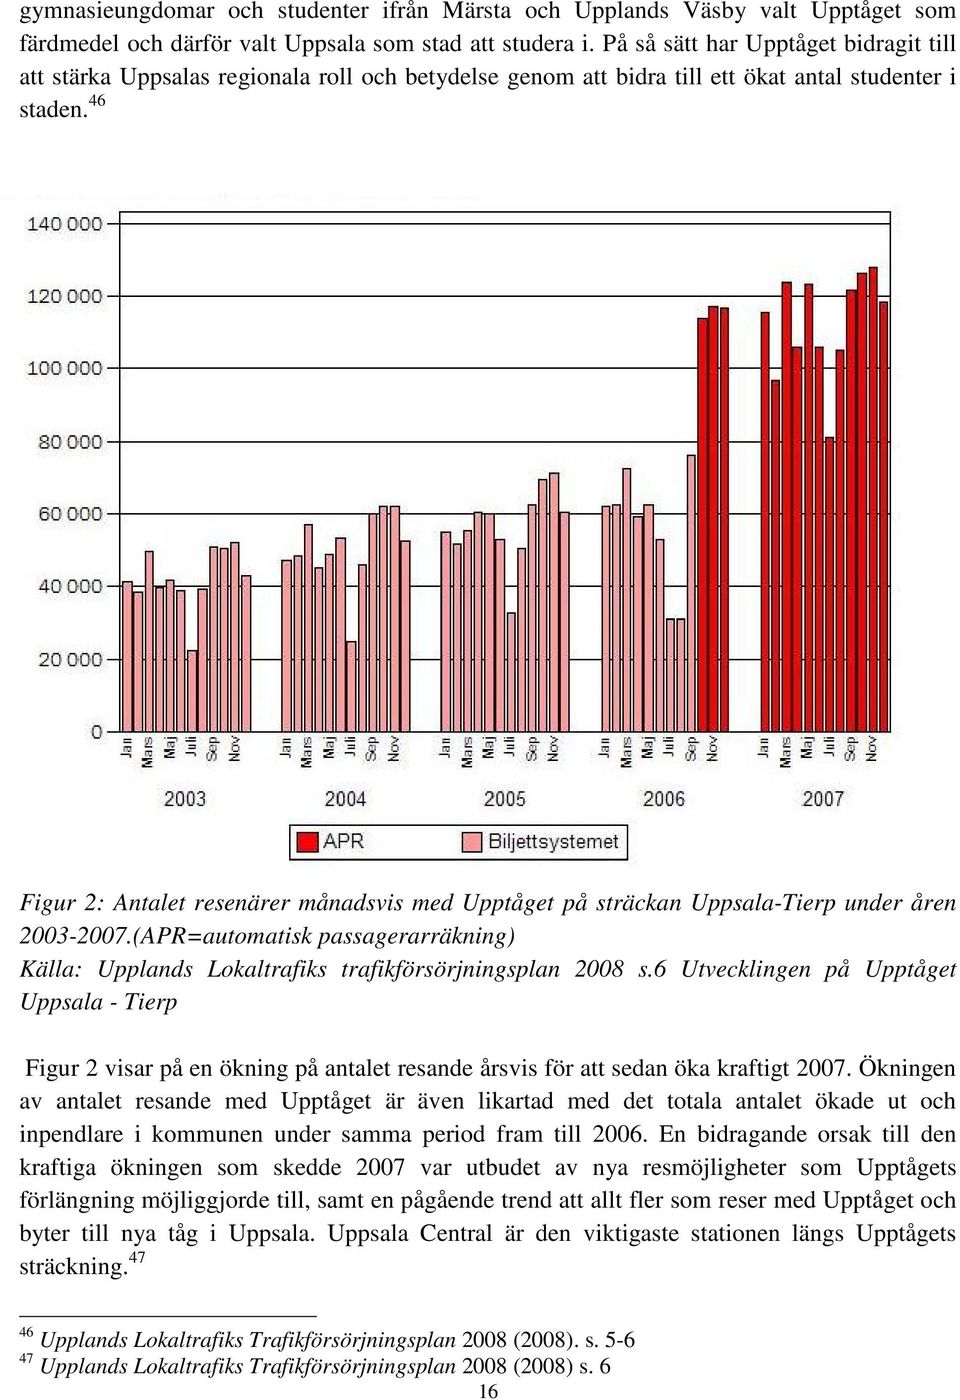 46 Figur 2: Antalet resenärer månadsvis med Upptåget på sträckan Uppsala-Tierp under åren 2003-2007.(APR=automatisk passagerarräkning) Källa: Upplands Lokaltrafiks trafikförsörjningsplan 2008 s.